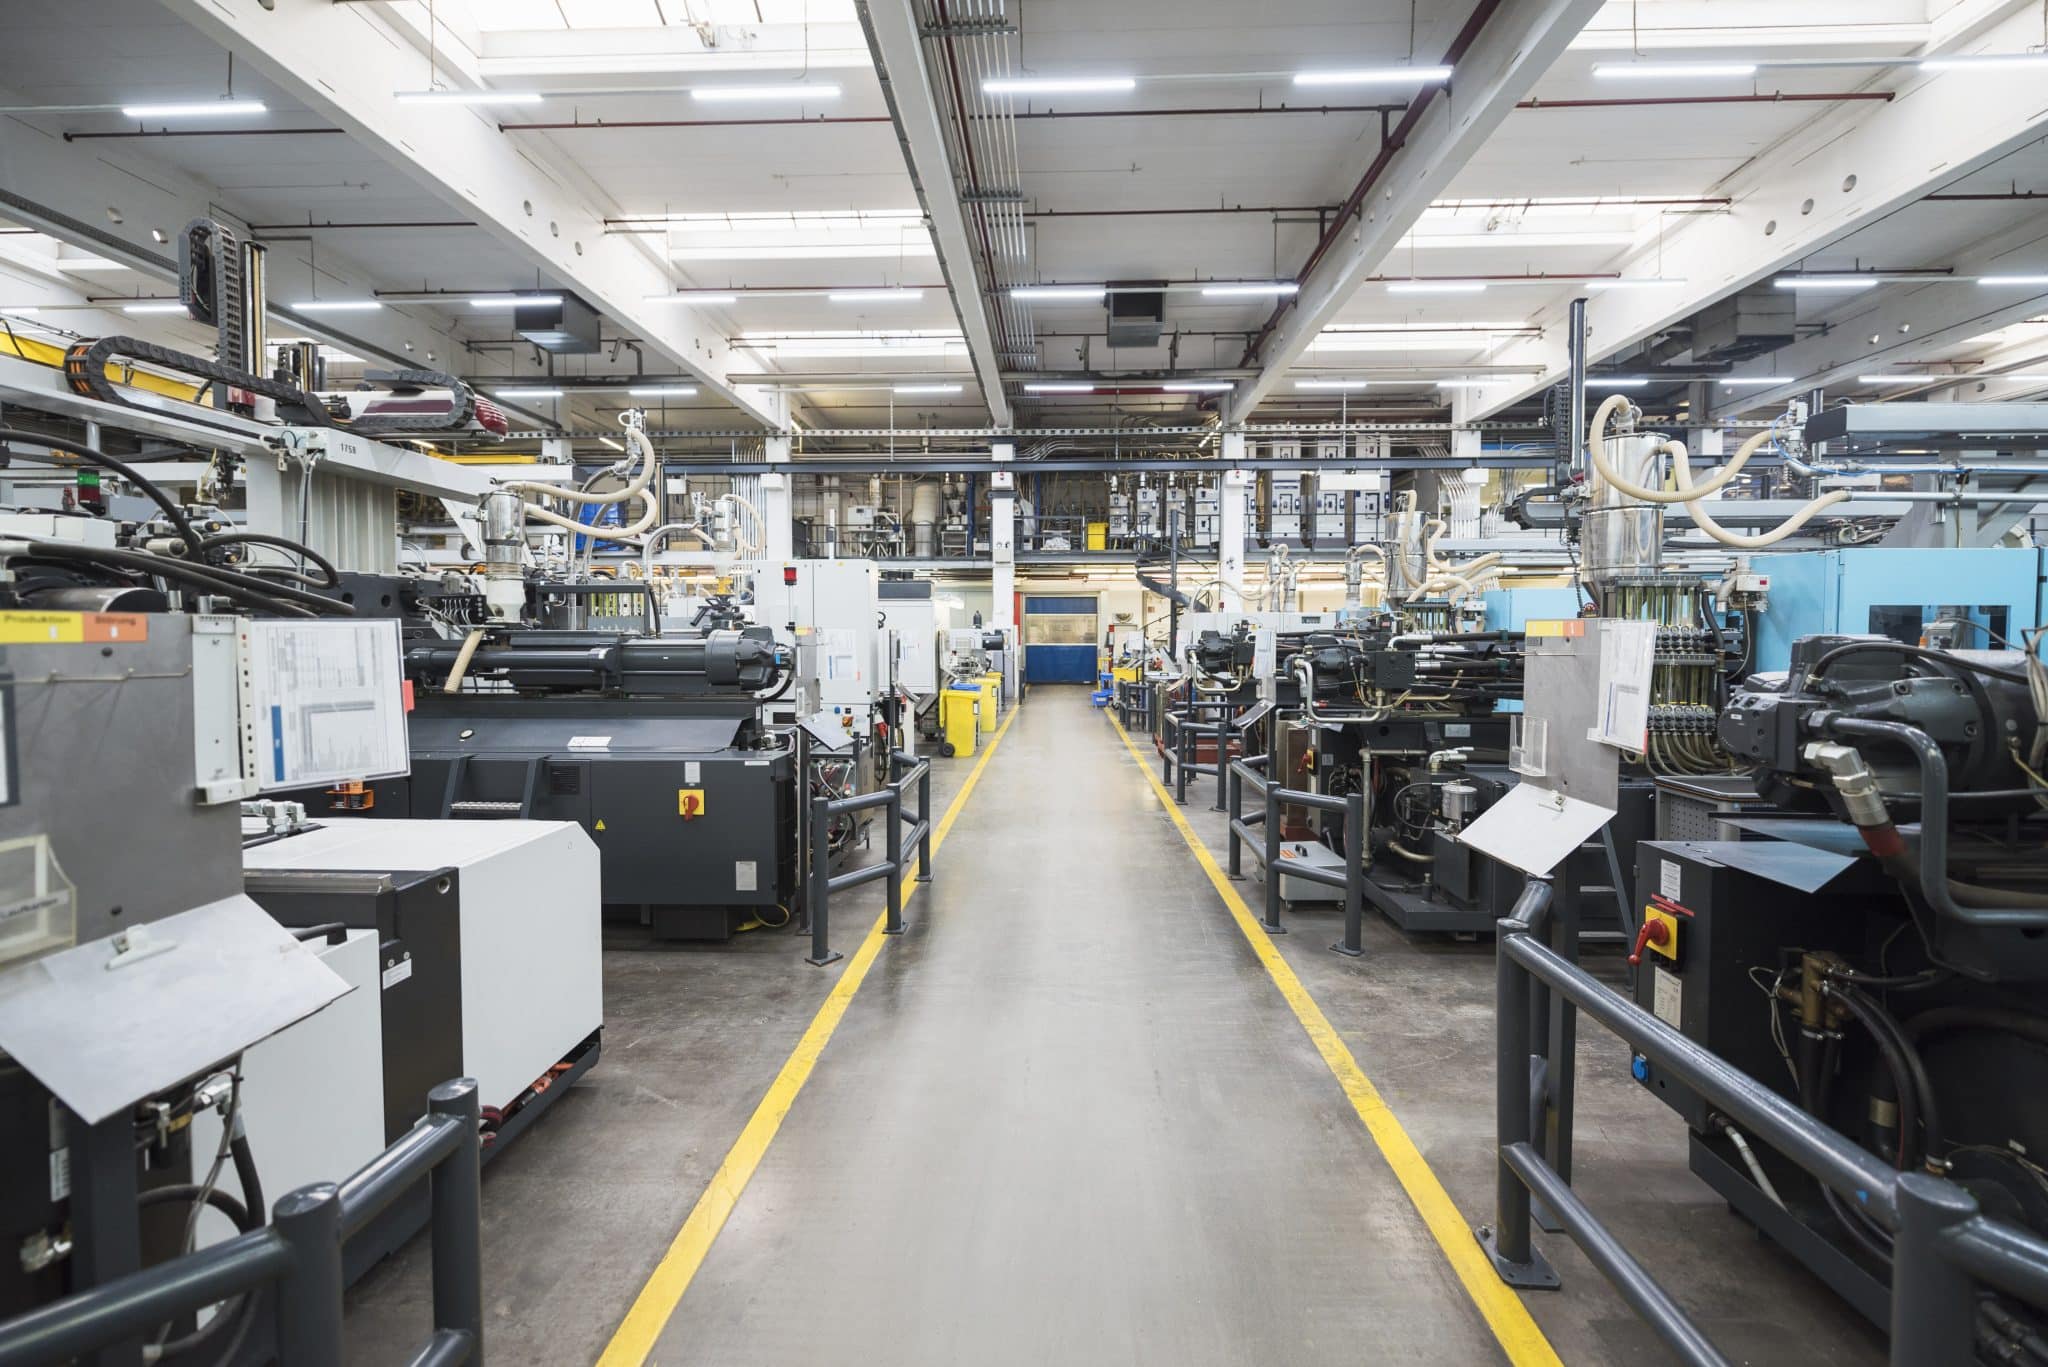 Machines on factory shop floor